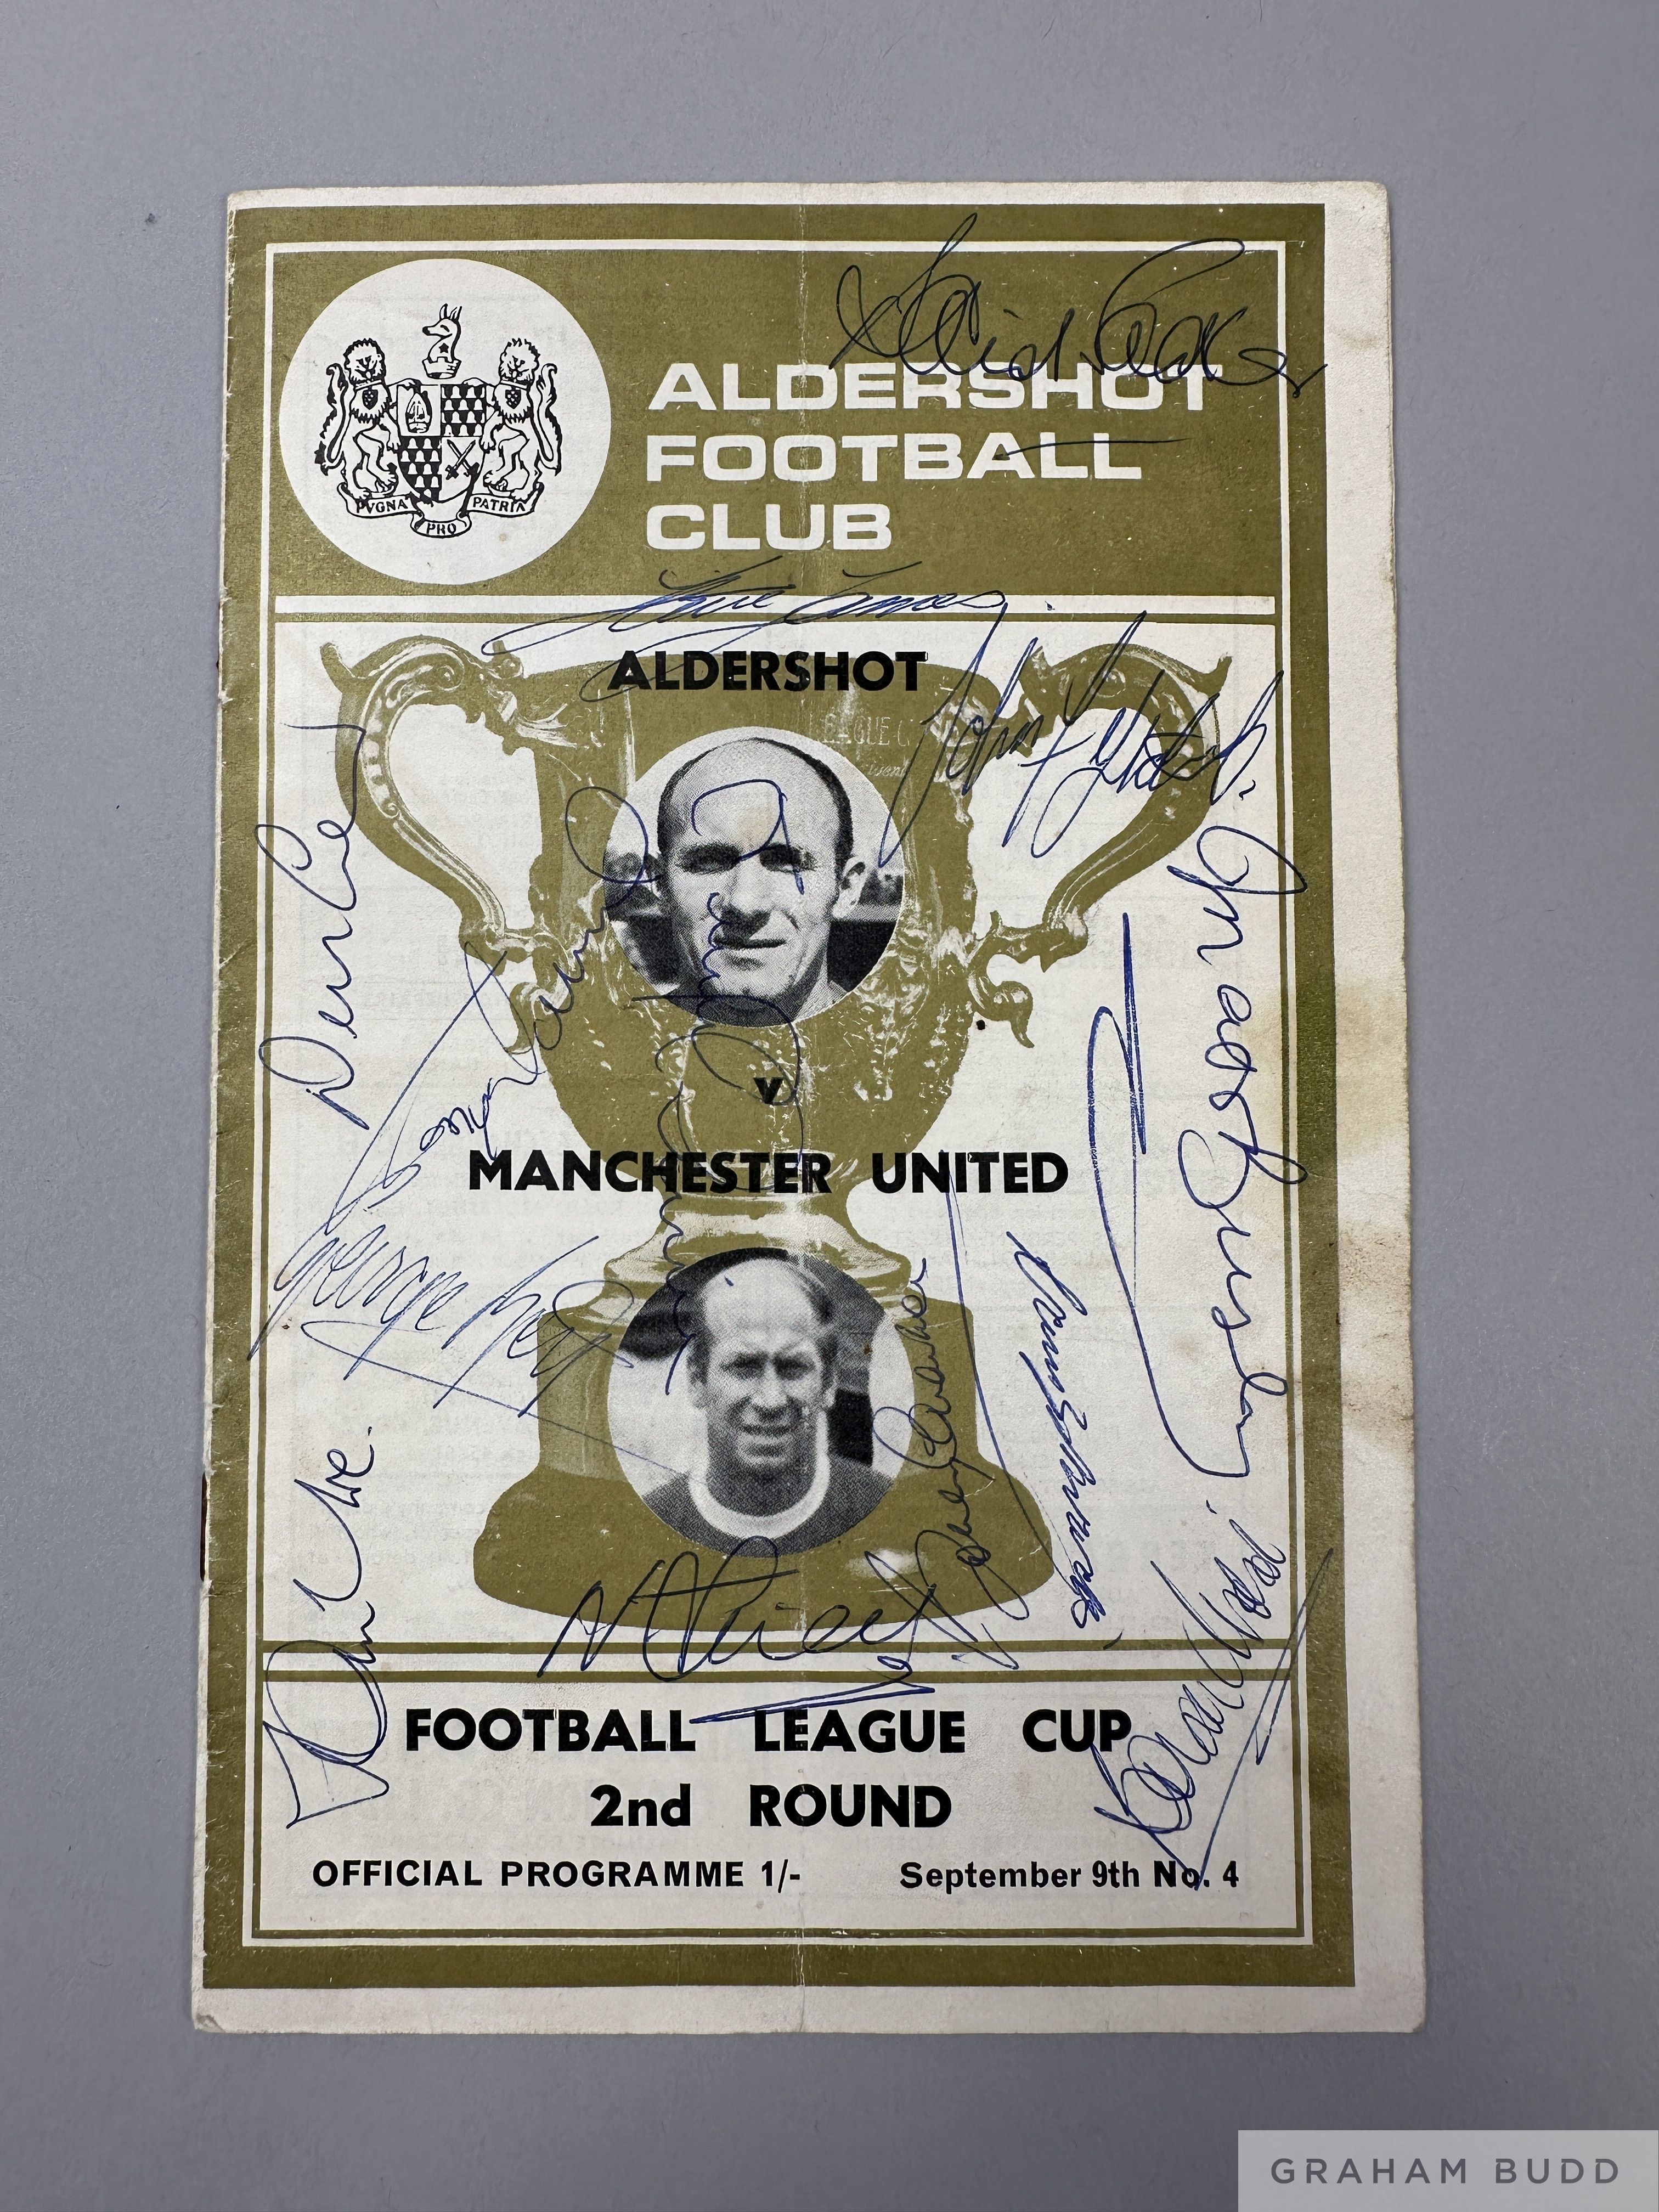 Manchester United-signed programme at Aldershot 9th September 1970,